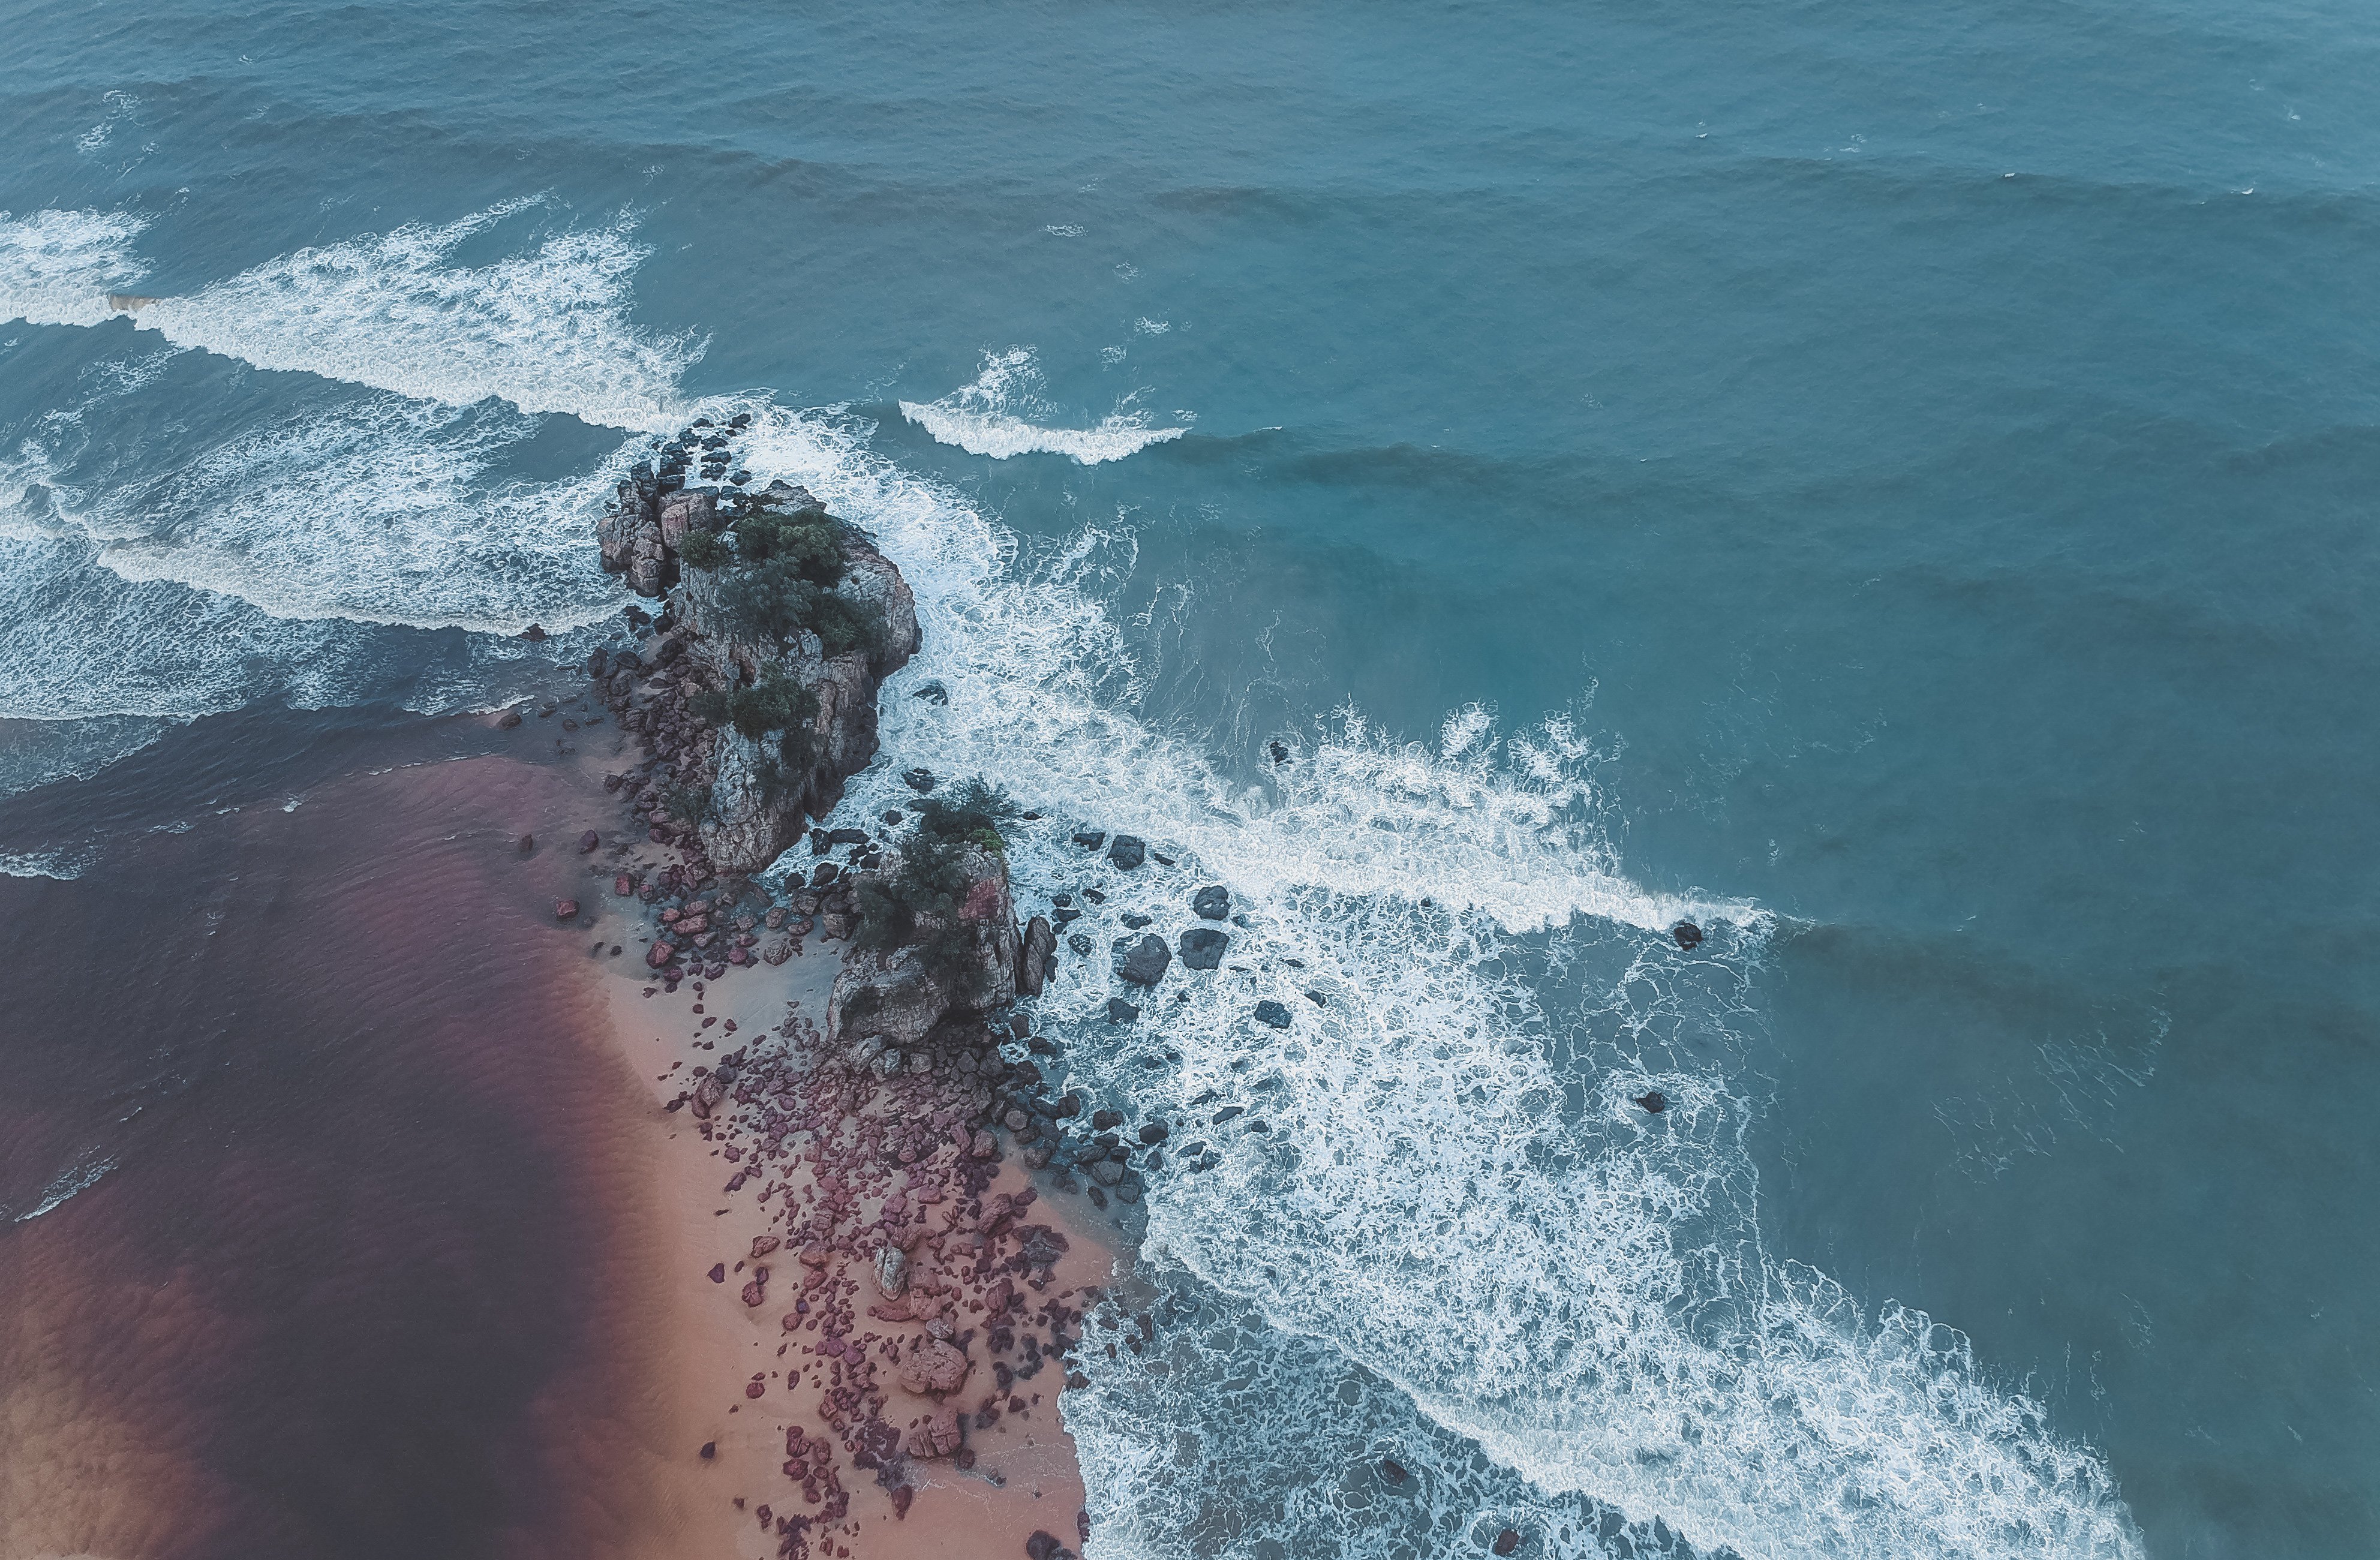 Fondos de pantalla Toma aérea de costa del mar playa